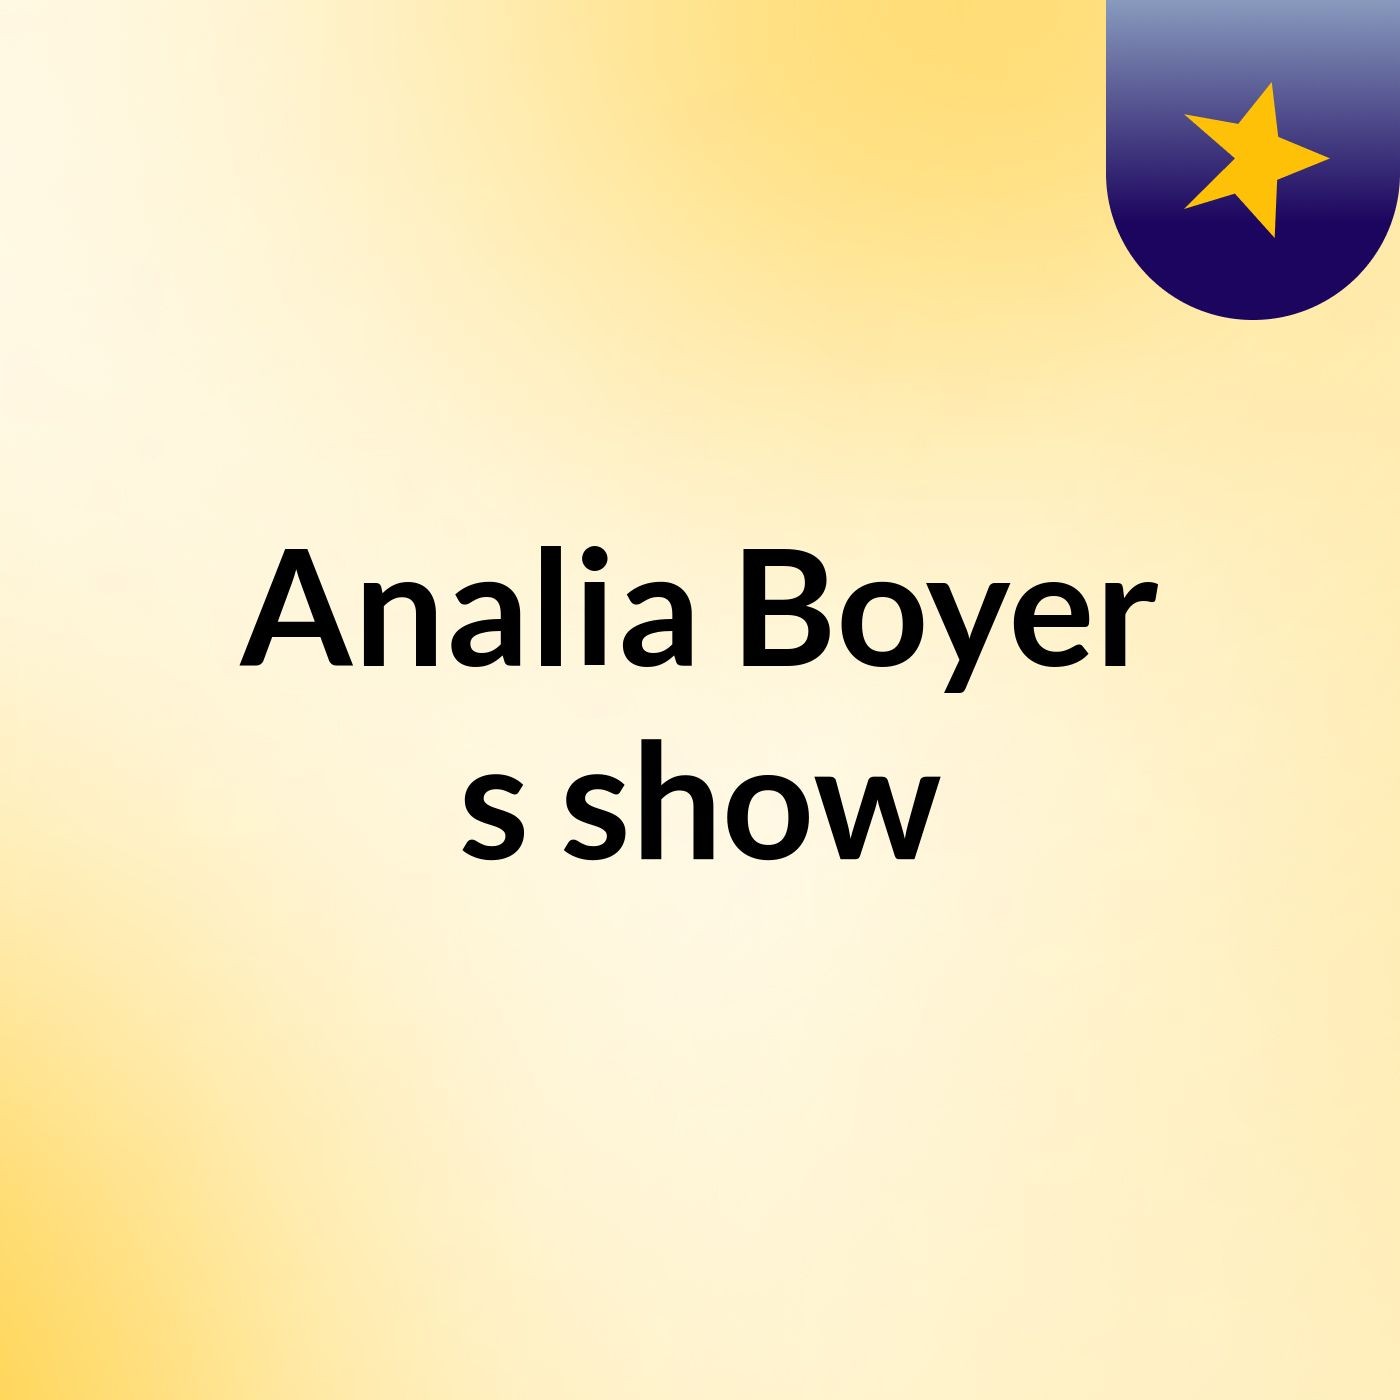 Analia Boyer's show